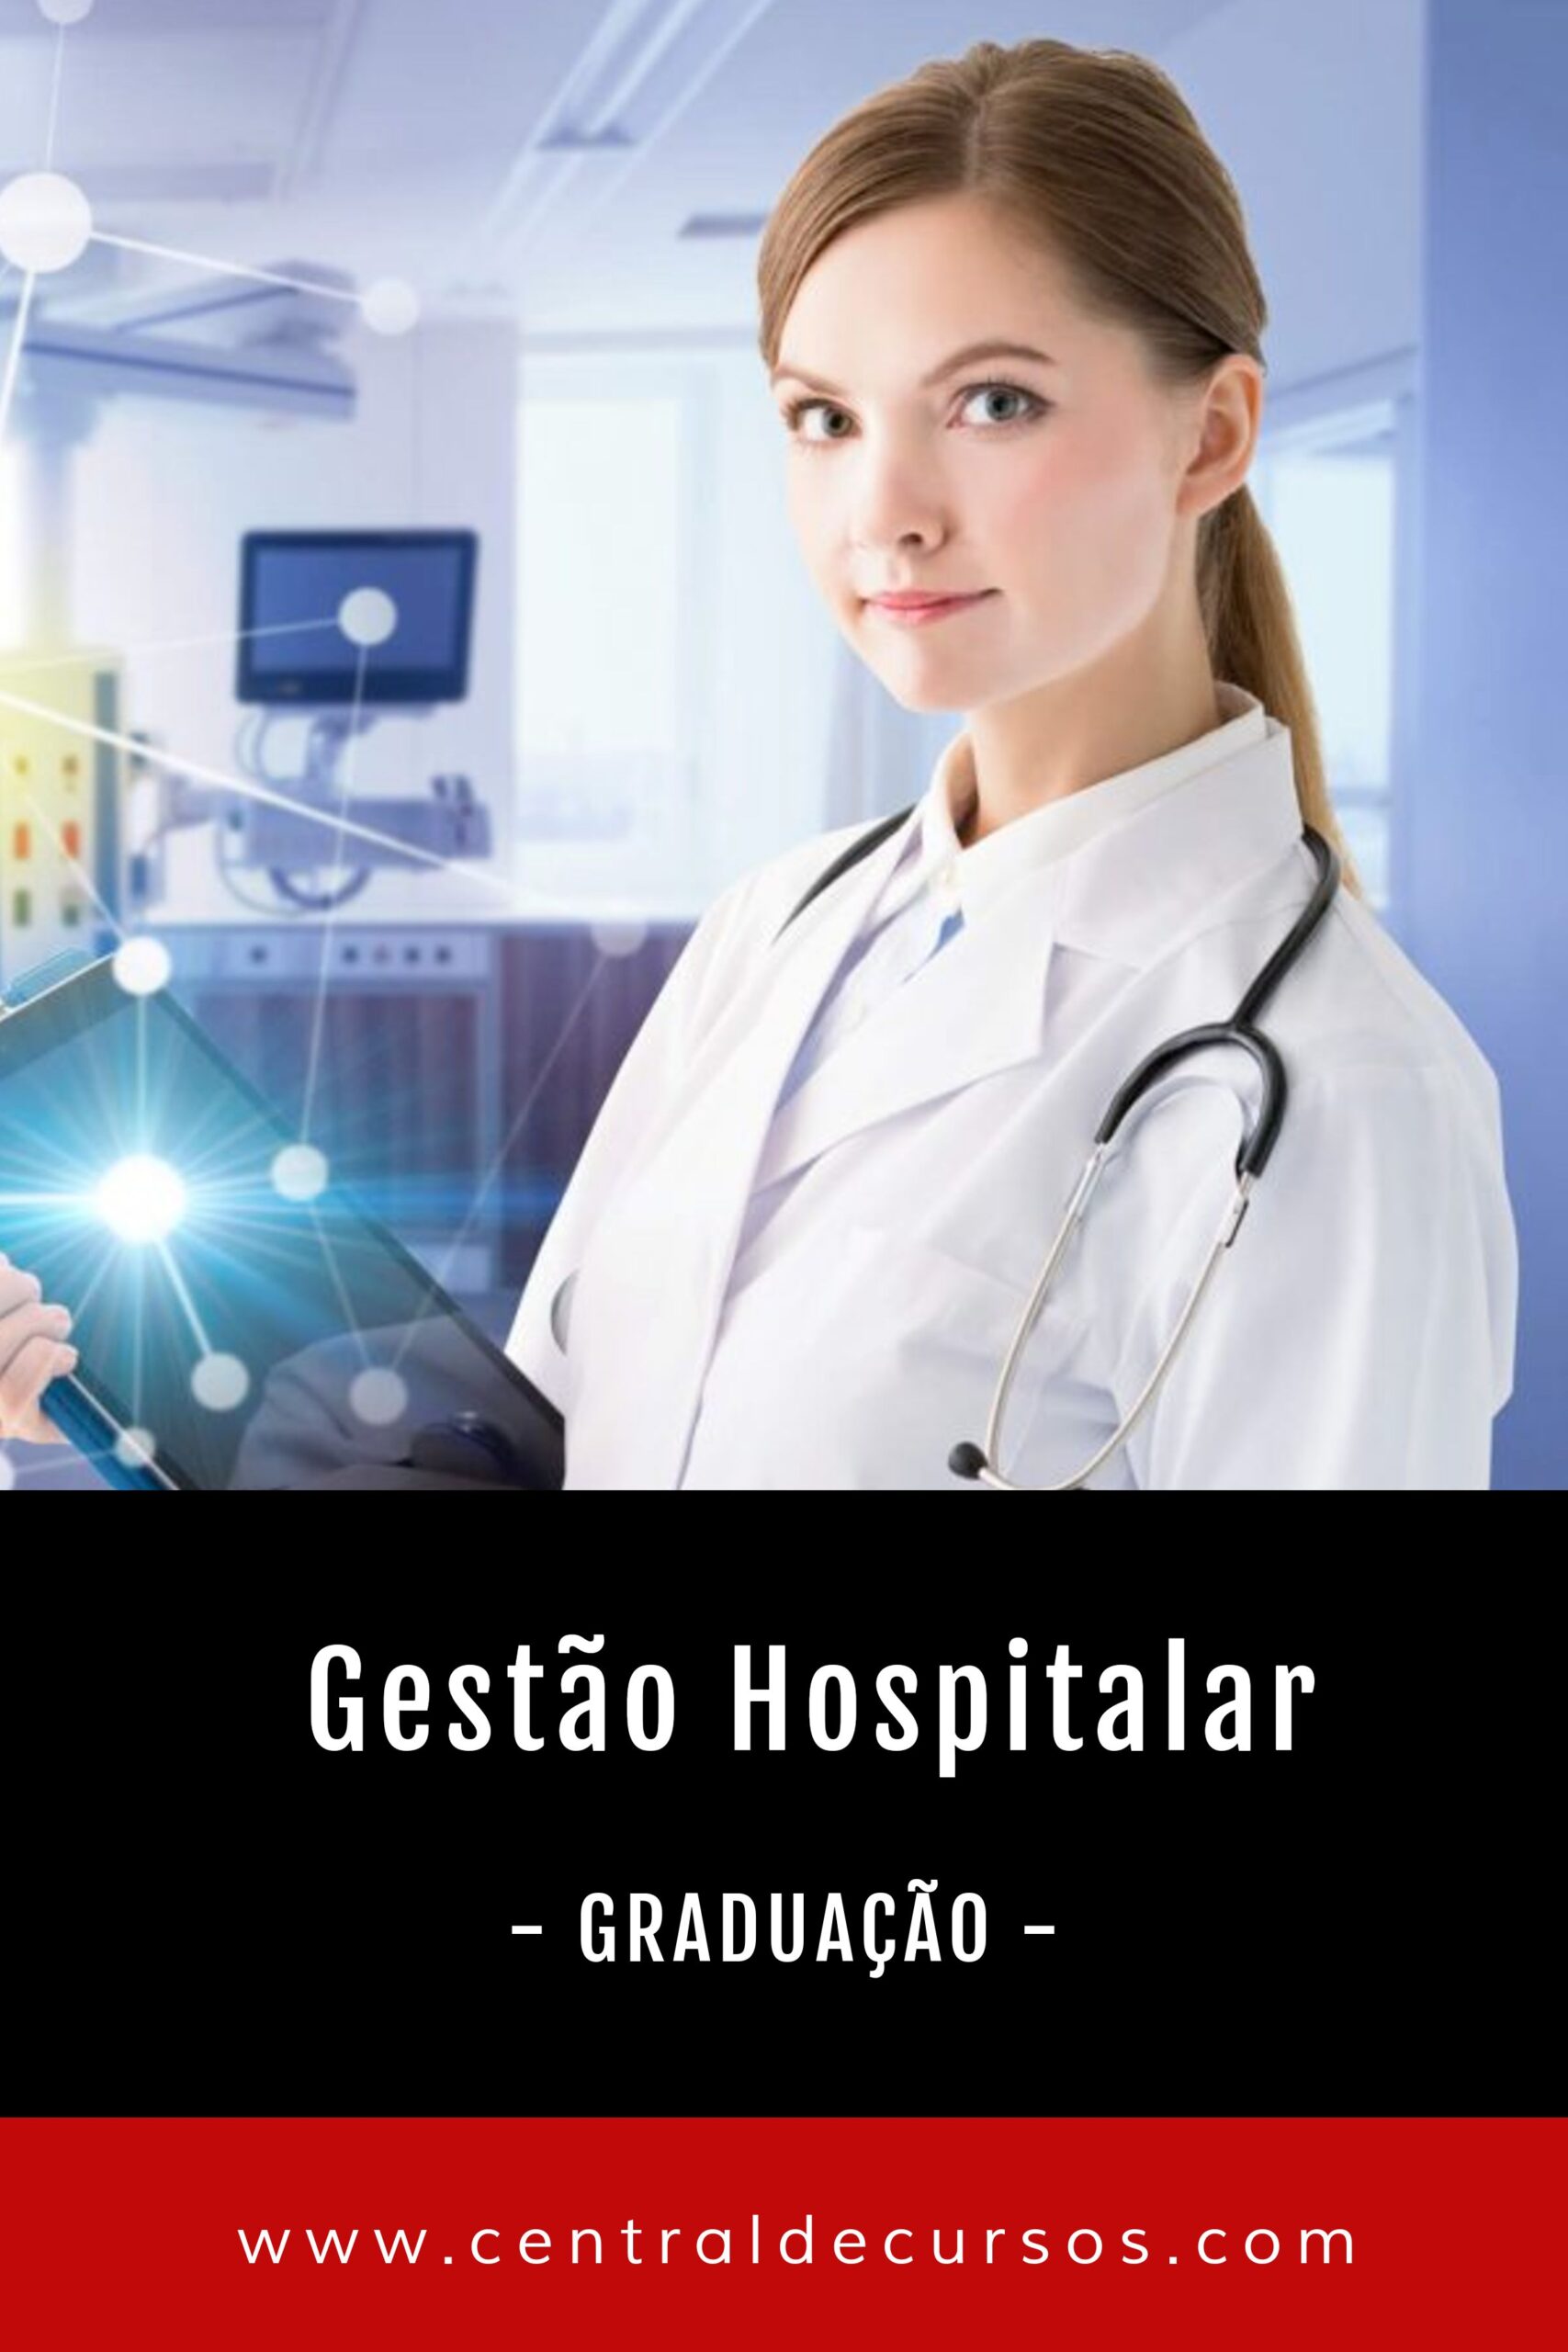 Graduação em gestão hospitalar